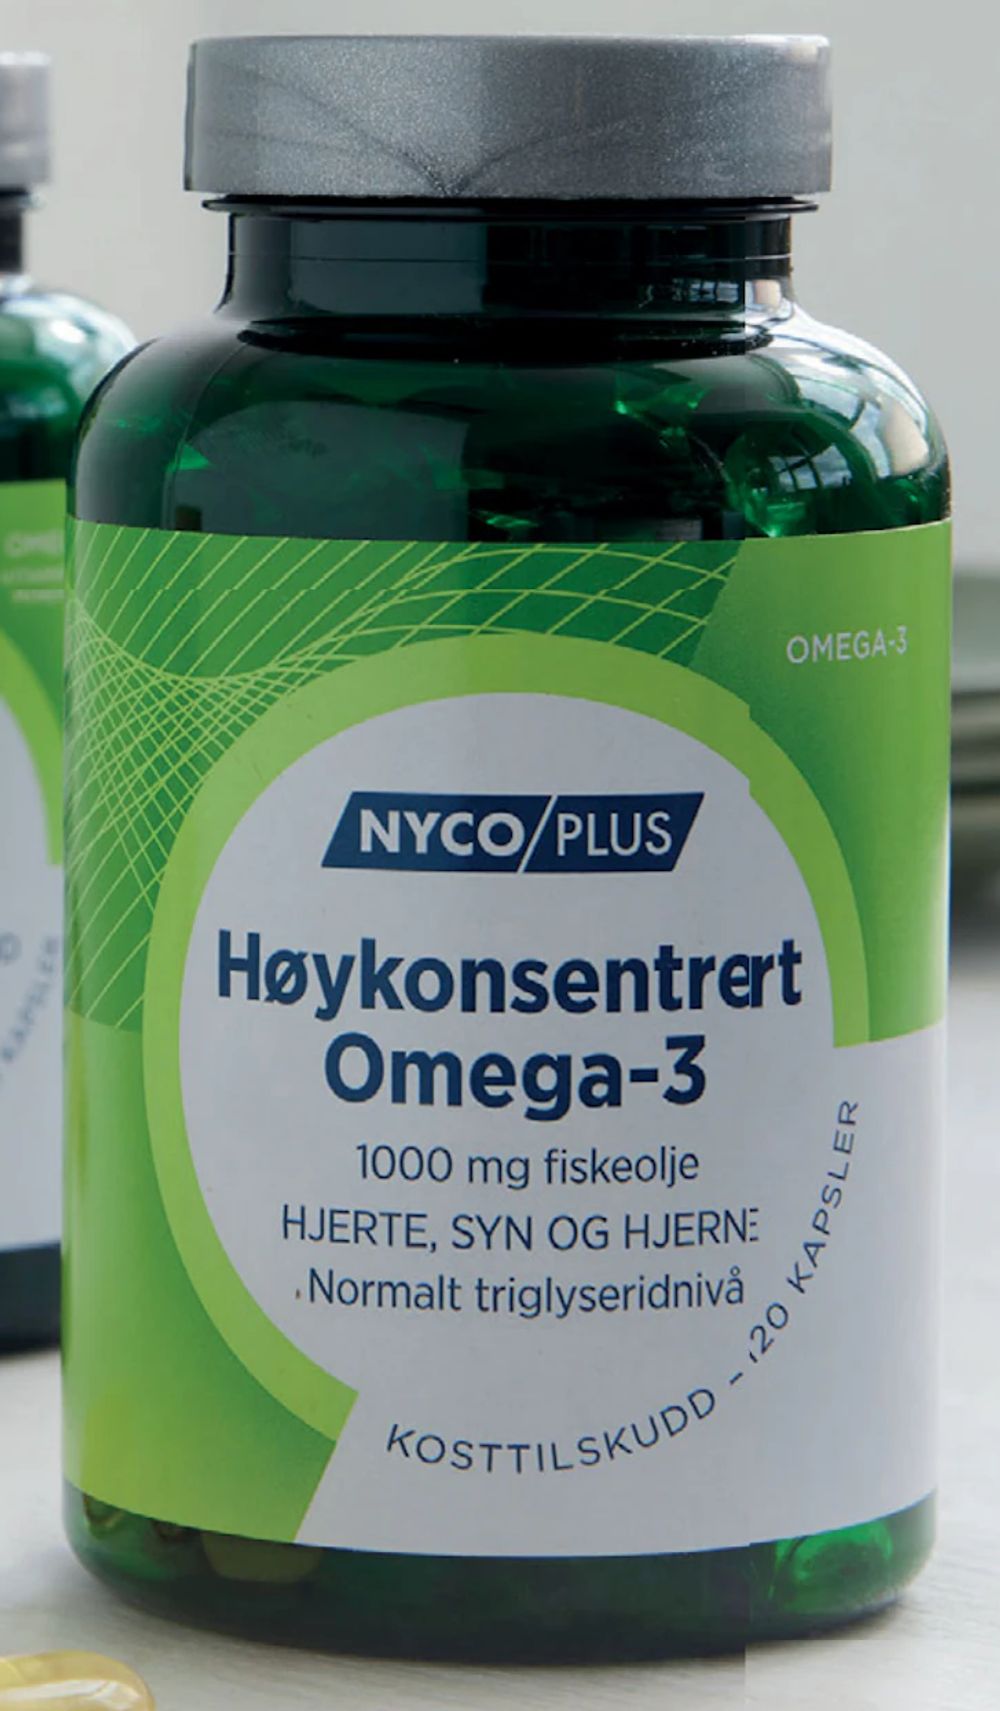 Tilbud på Nycoplus Høykonsentrert Omega-3 120 kapsler fra Vitusapotek til 233,50 kr